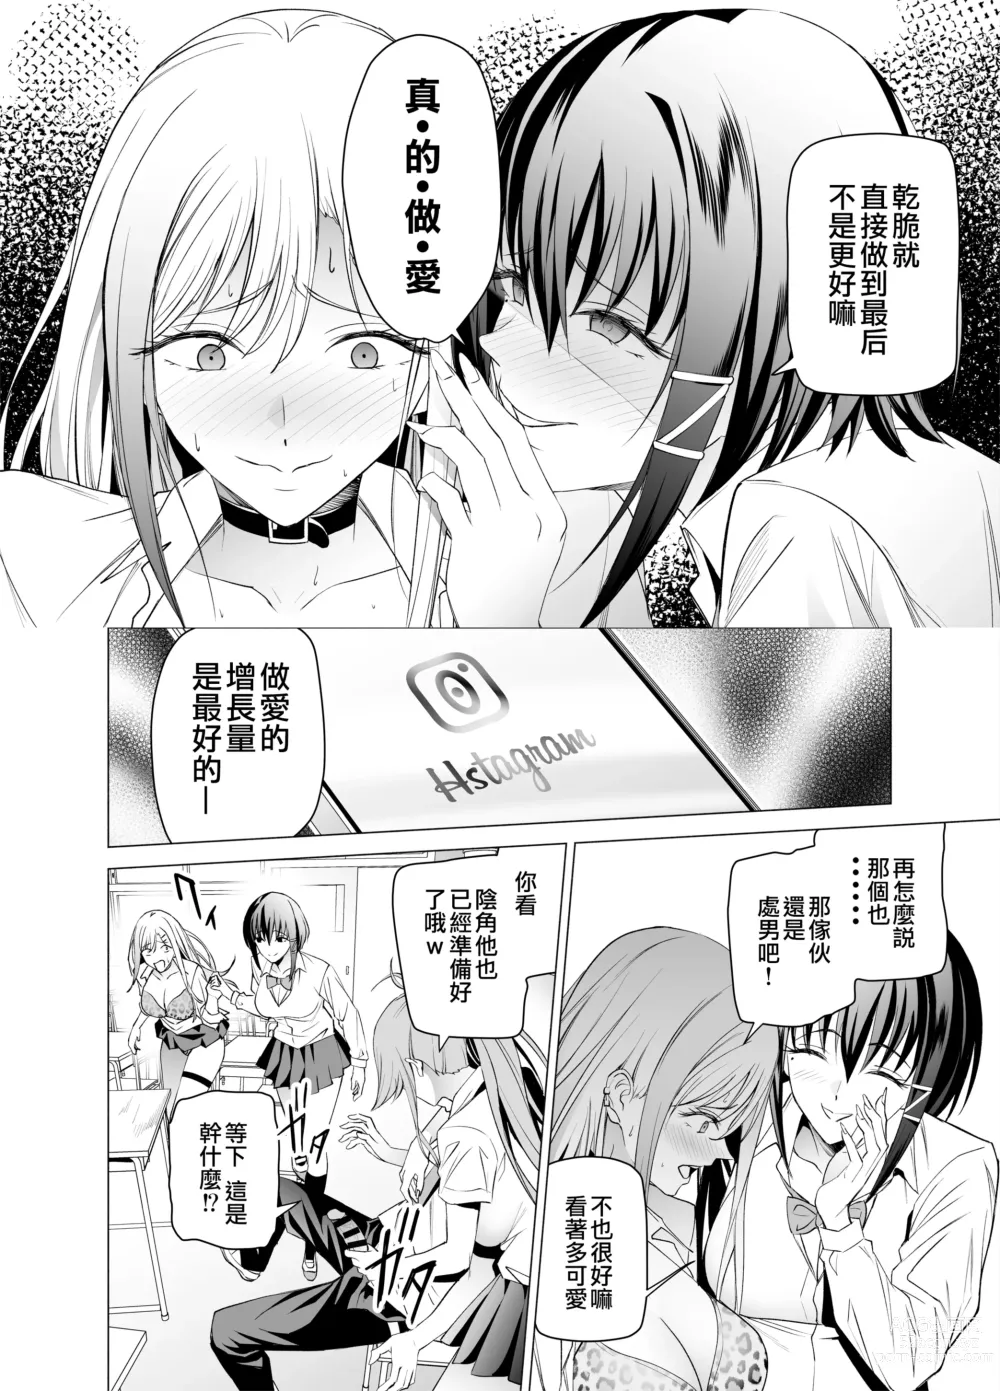 Page 20 of doujinshi 色情SNS的點贊量為目的而向你靠過來的辣妹的故事